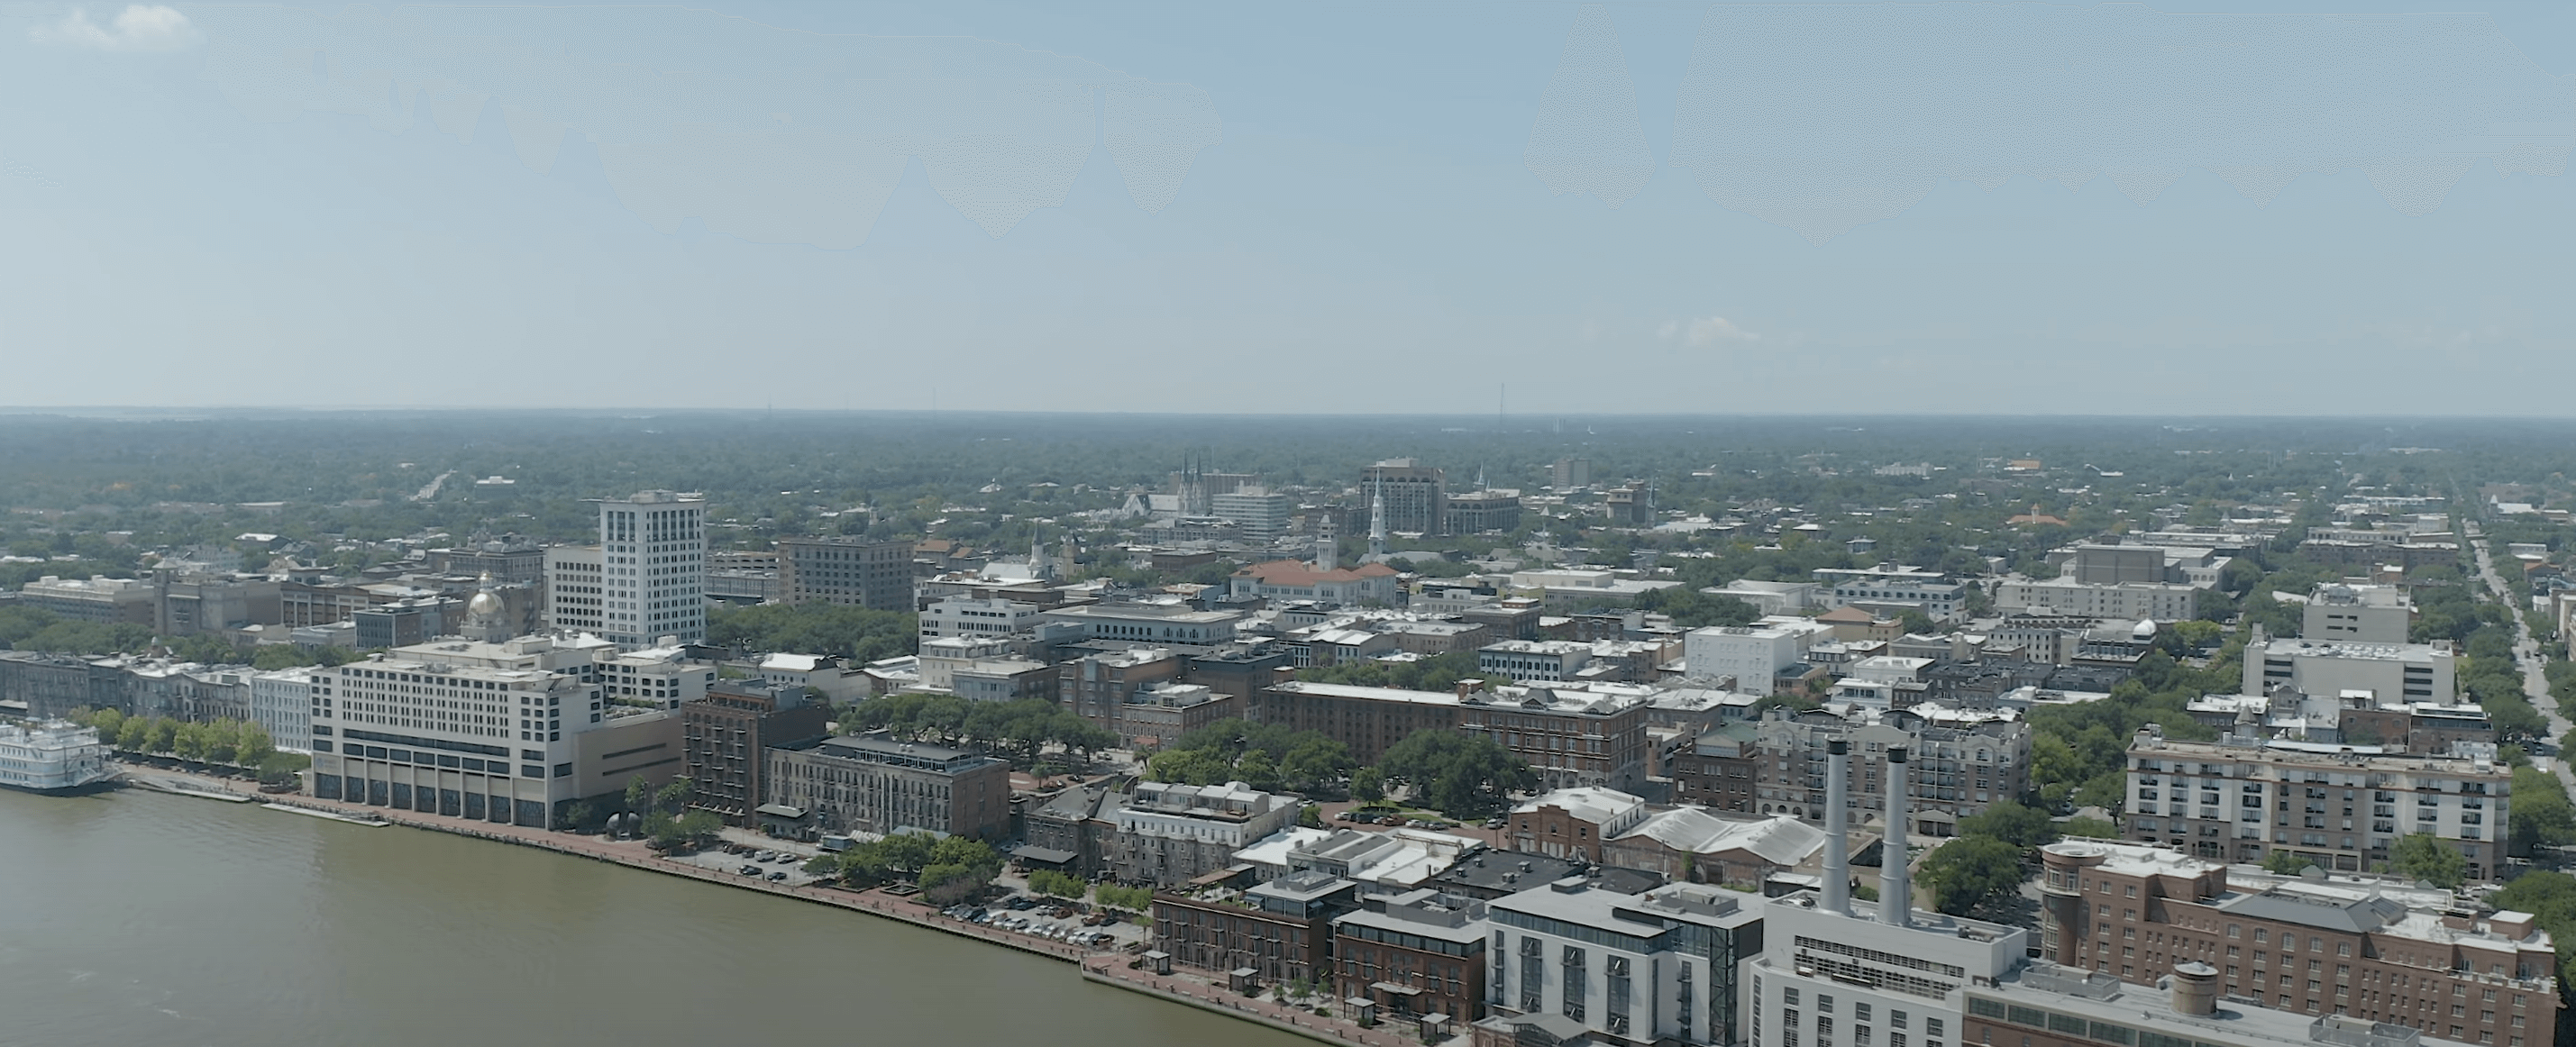 Savannah aerial view